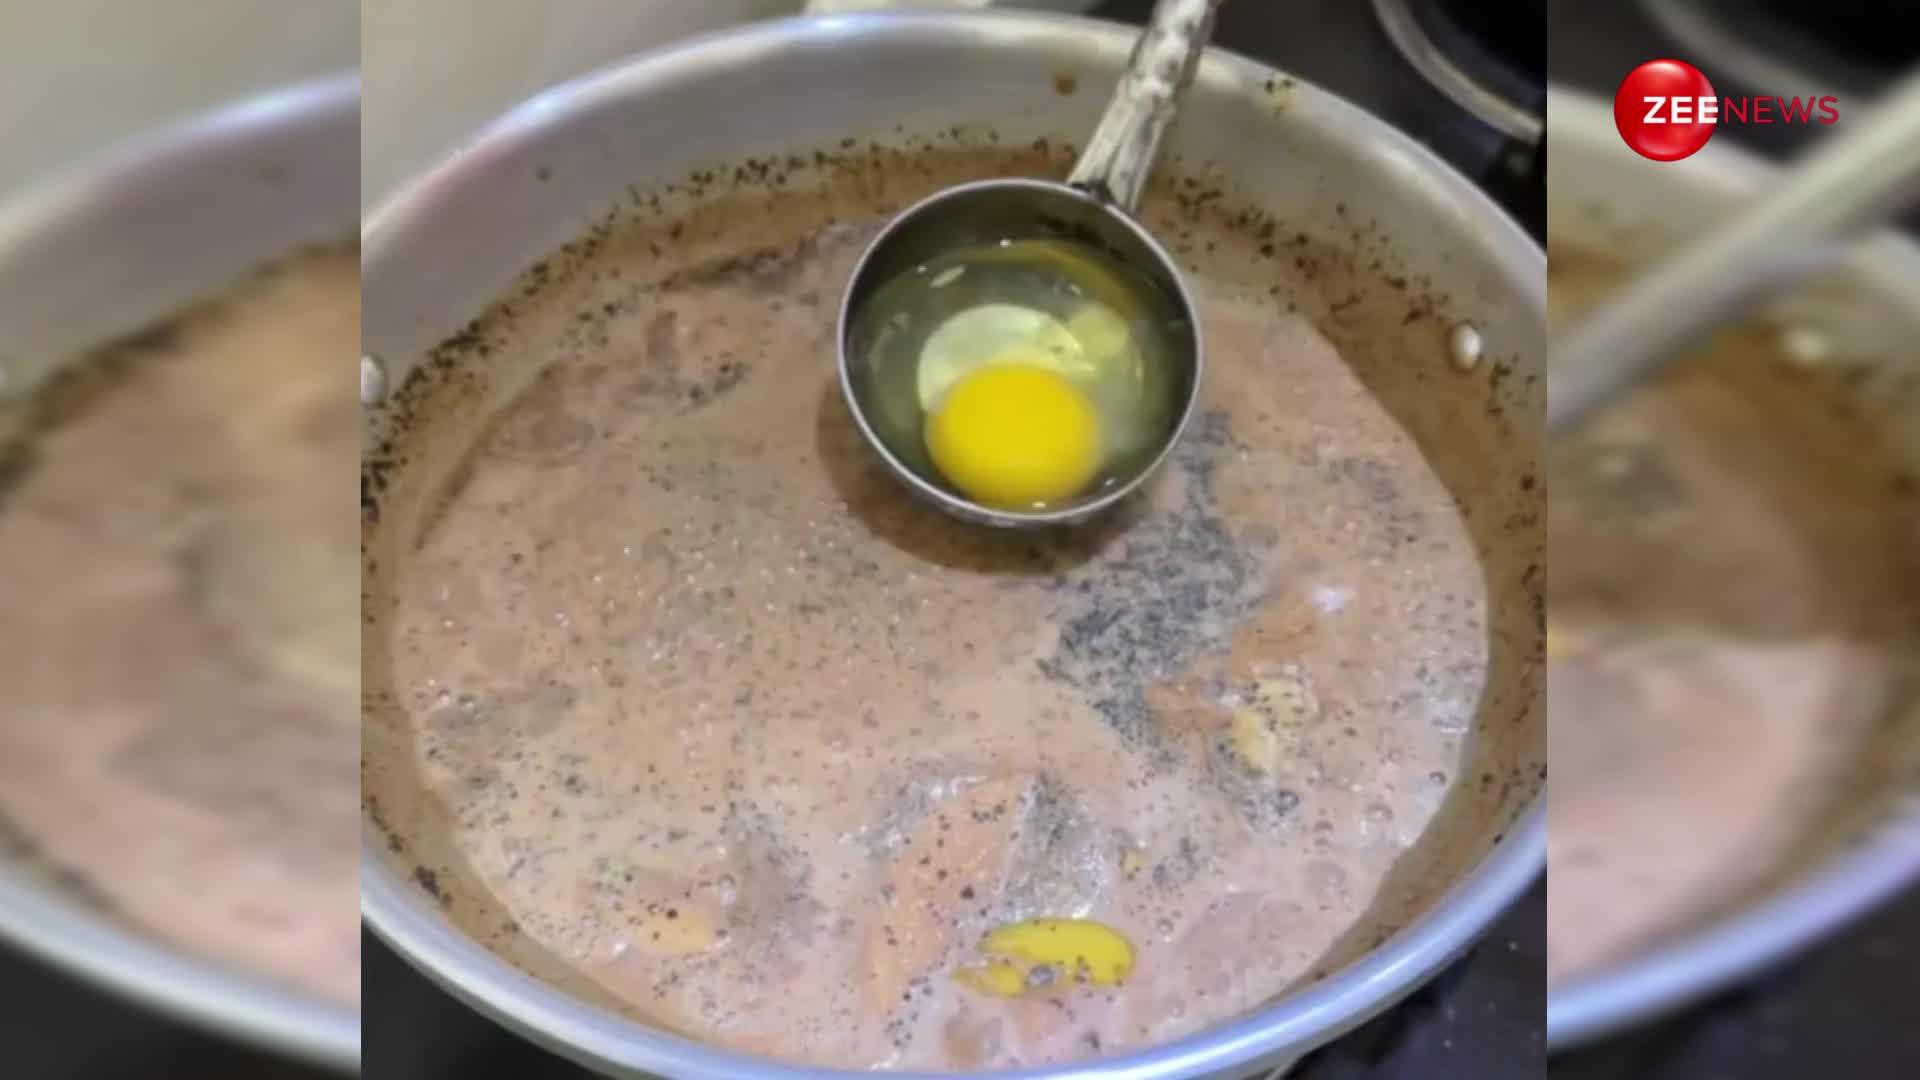 हद है! फेमस होने के लिए शख्स ने बना डाली अंडे वाली चाय, वीडियो देख गुस्साई पब्लिक